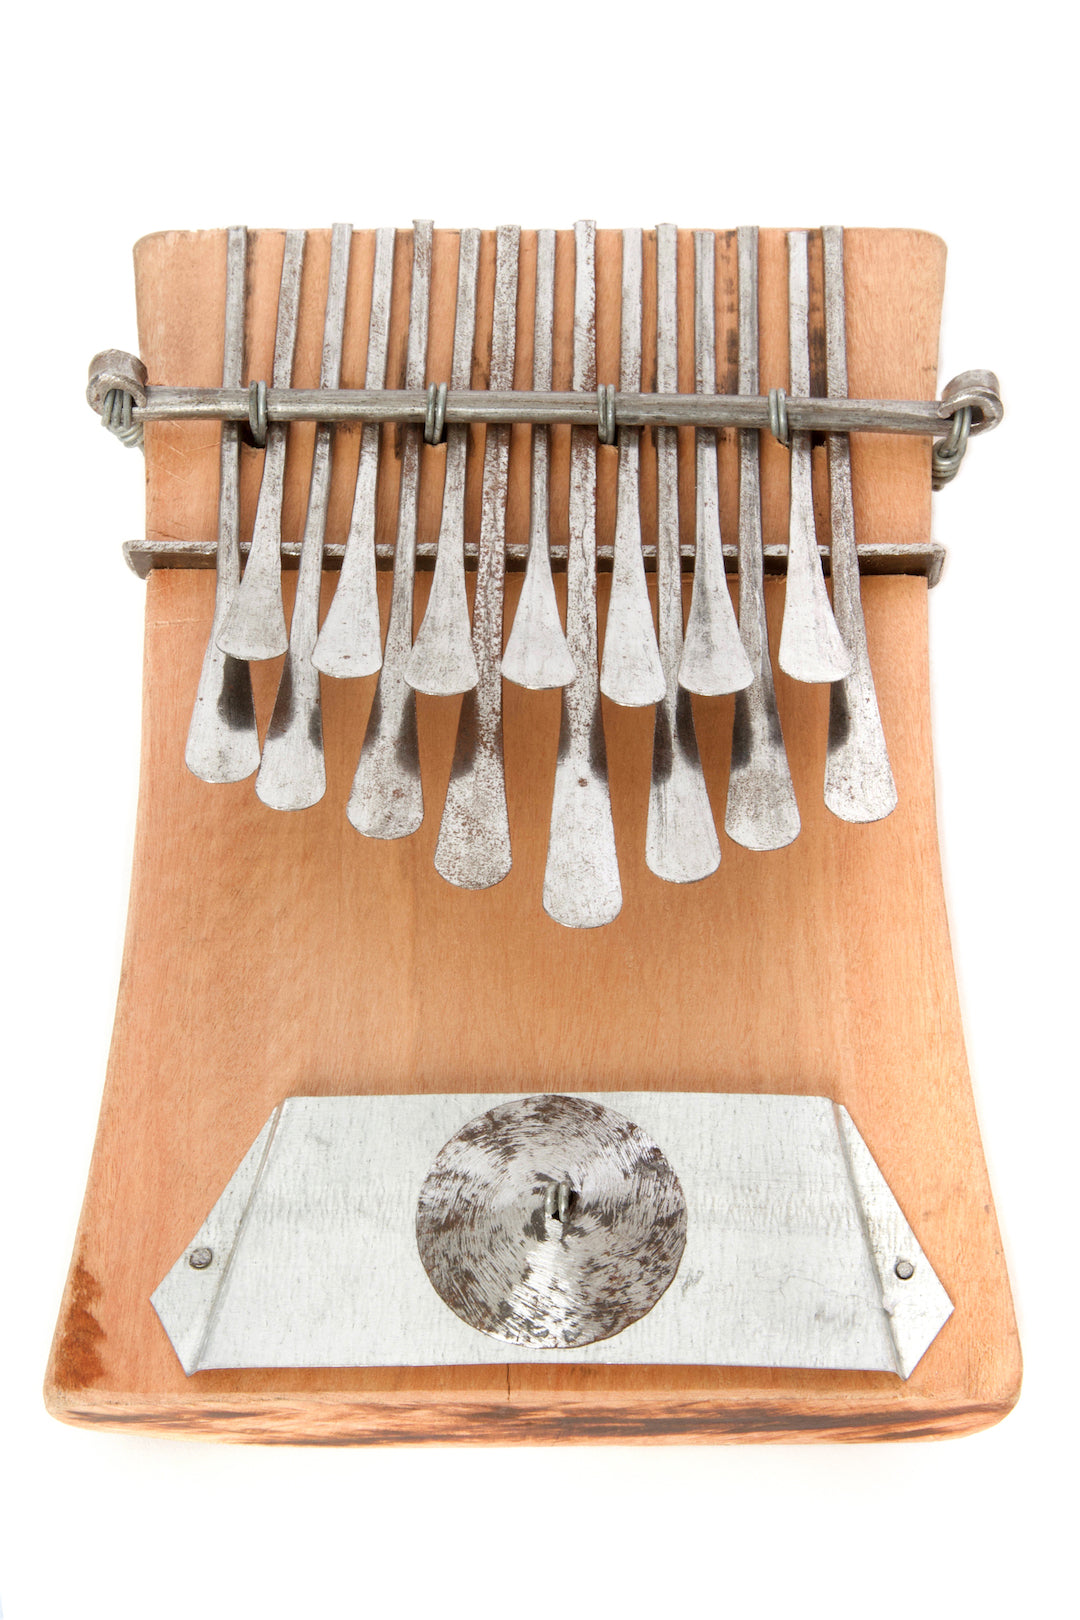 Mbira Instruments from Zimbabwe